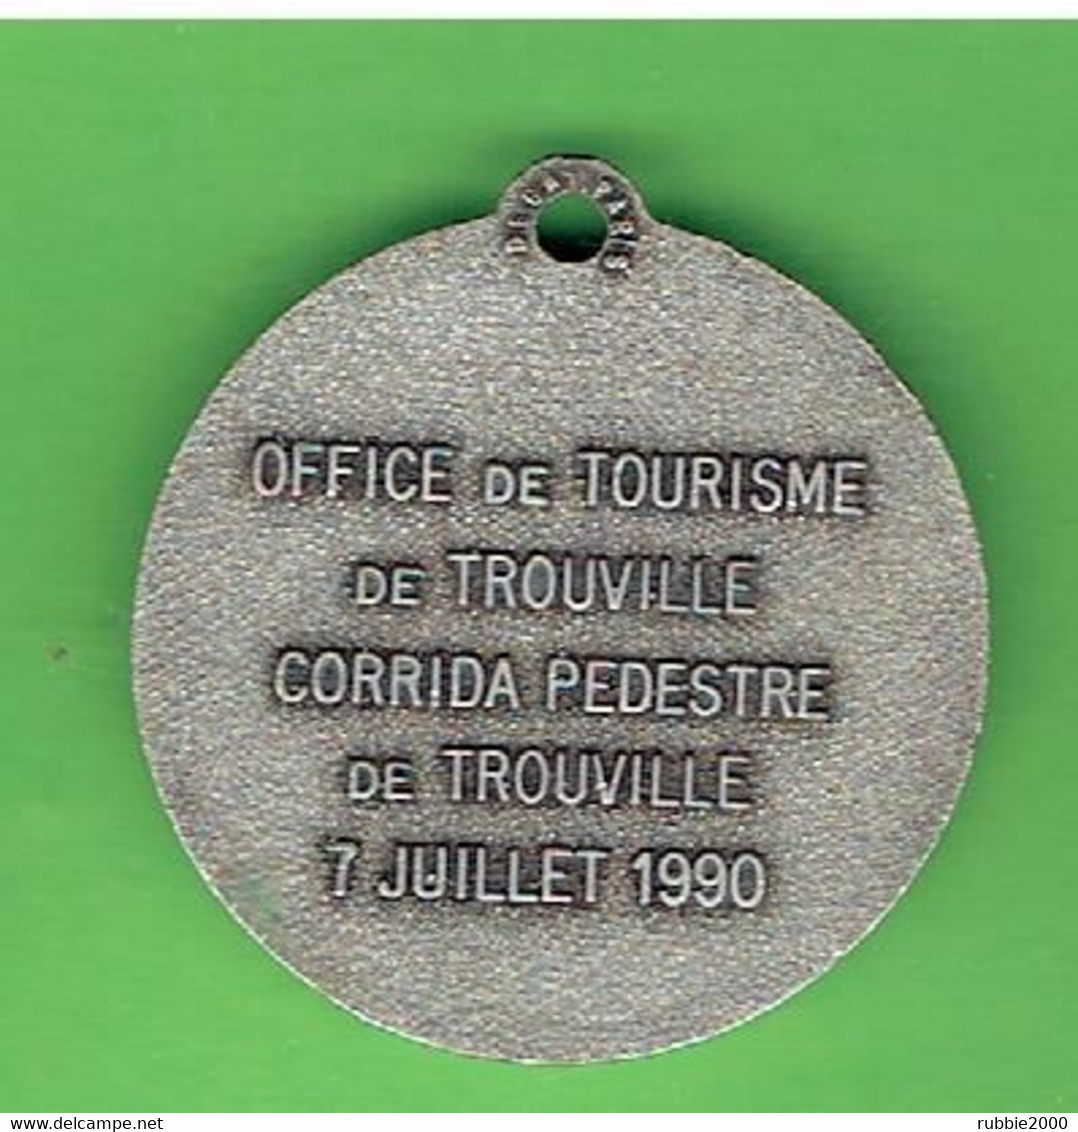 MEDAILLE EN METAL TROUVILLE CALVADOS CORRIDA PEDESTRE DE TROUVILLE 7 JUILLET 1990 FABRICANT DECAT - Athlétisme